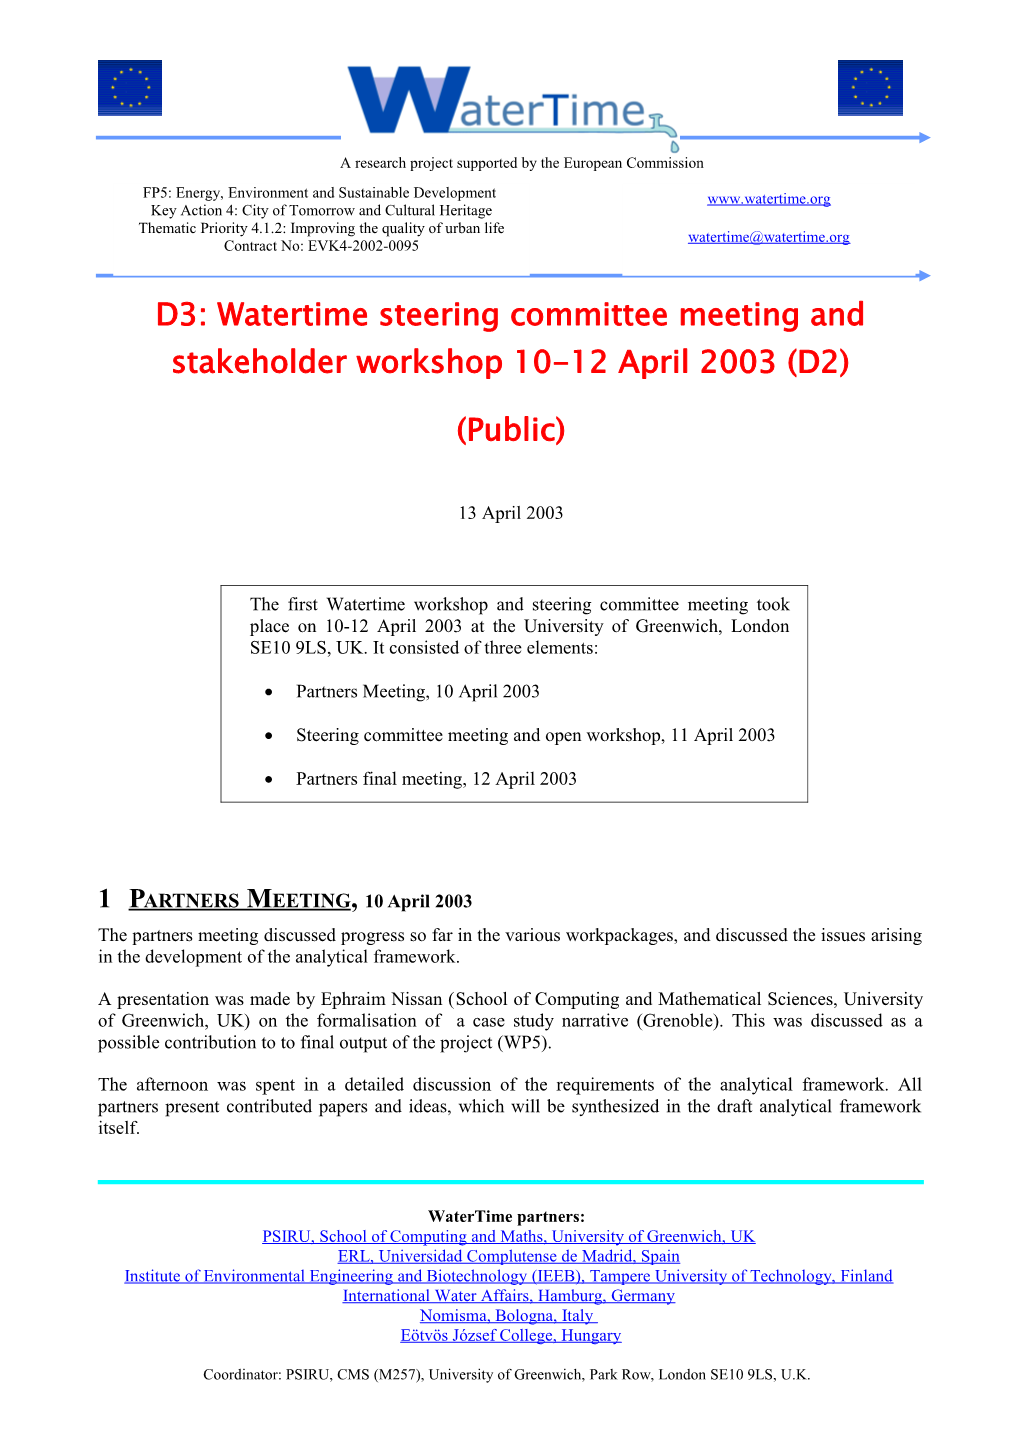 D3: Watertime Steering Committee Meeting and Stakeholder Workshop 10-12 April 2003 (D2)